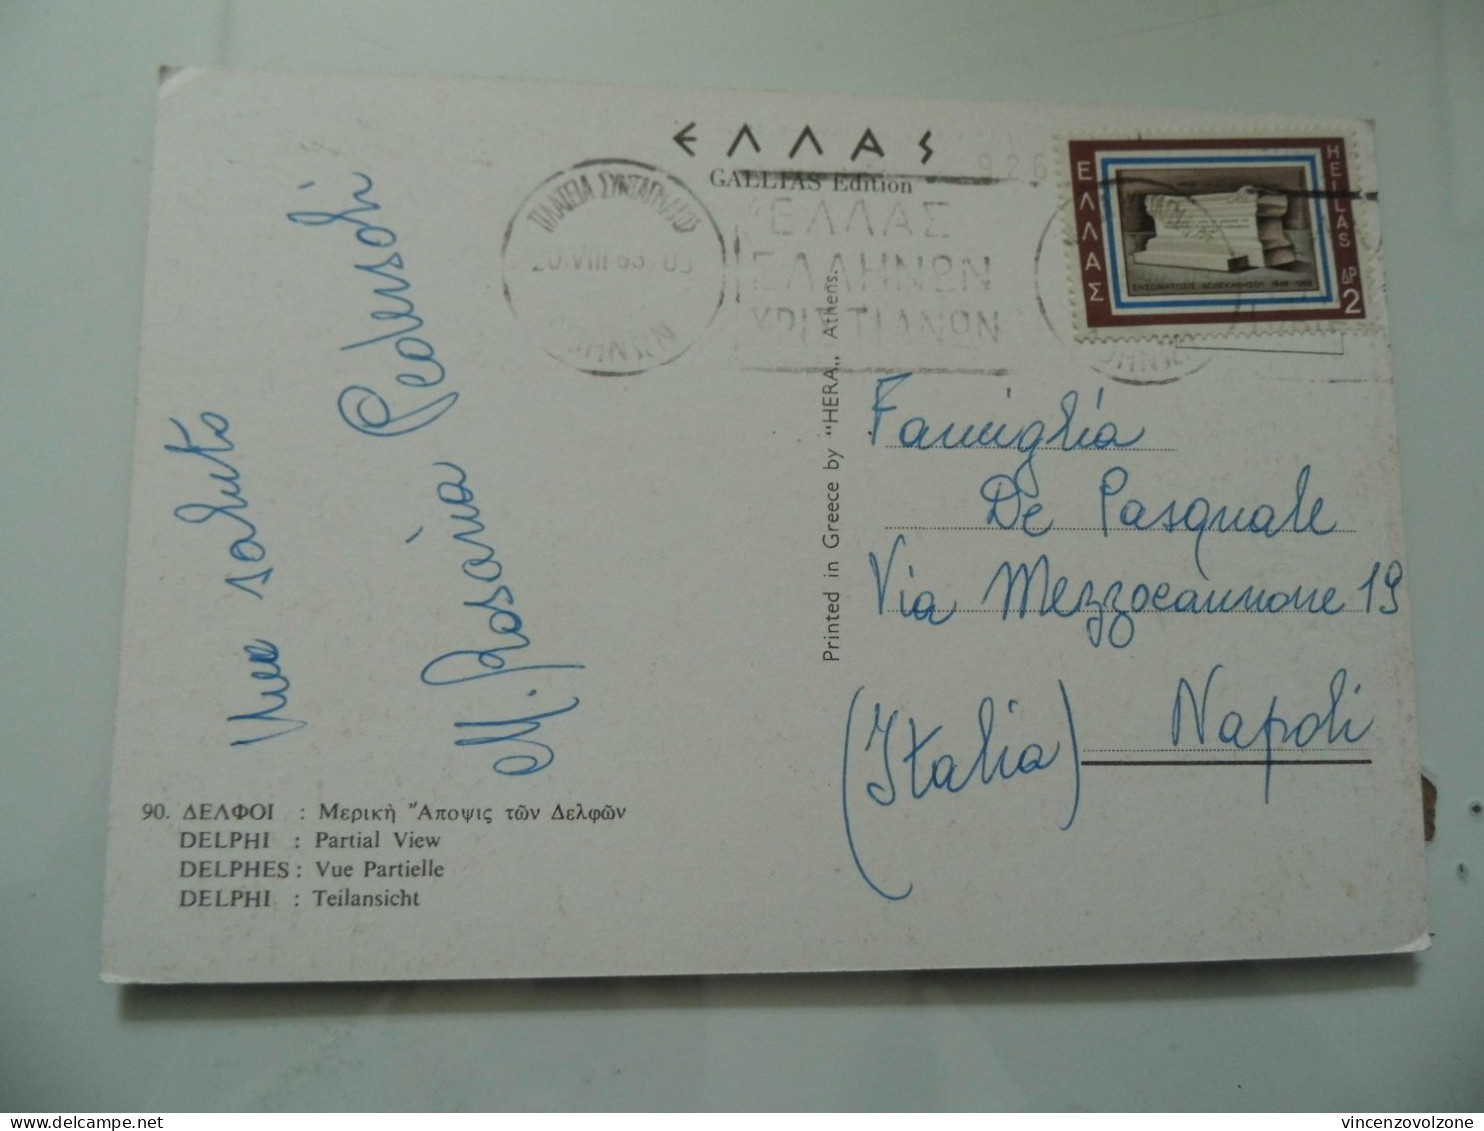 Cartolina Viaggiata "DELPHI Partial View" 1965ù - Griechenland